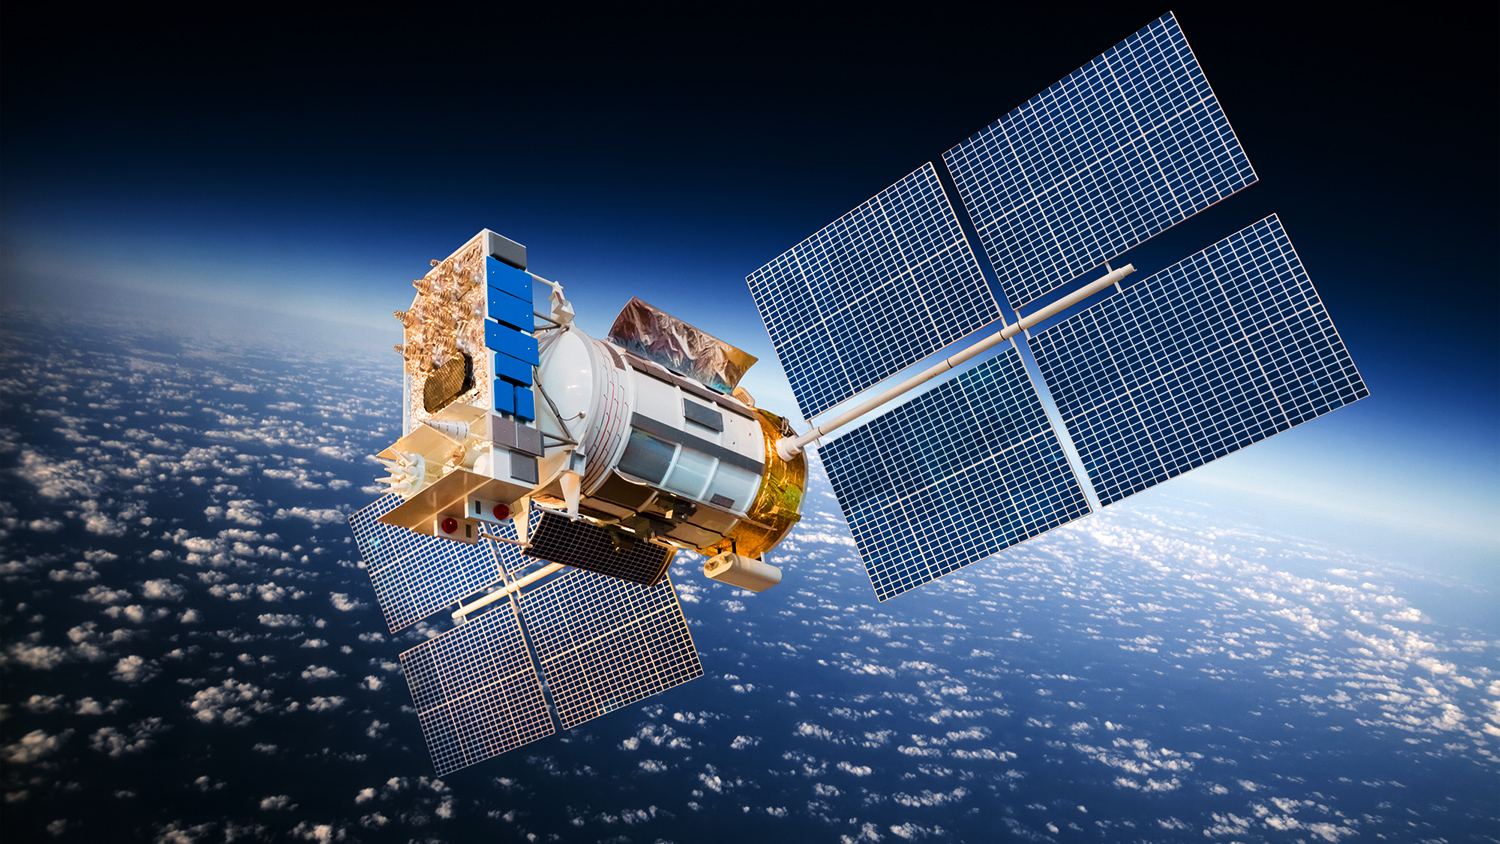 Belgian SatADSL to provide communication to Eastern Europe, Russia via Azerbaijani satellites